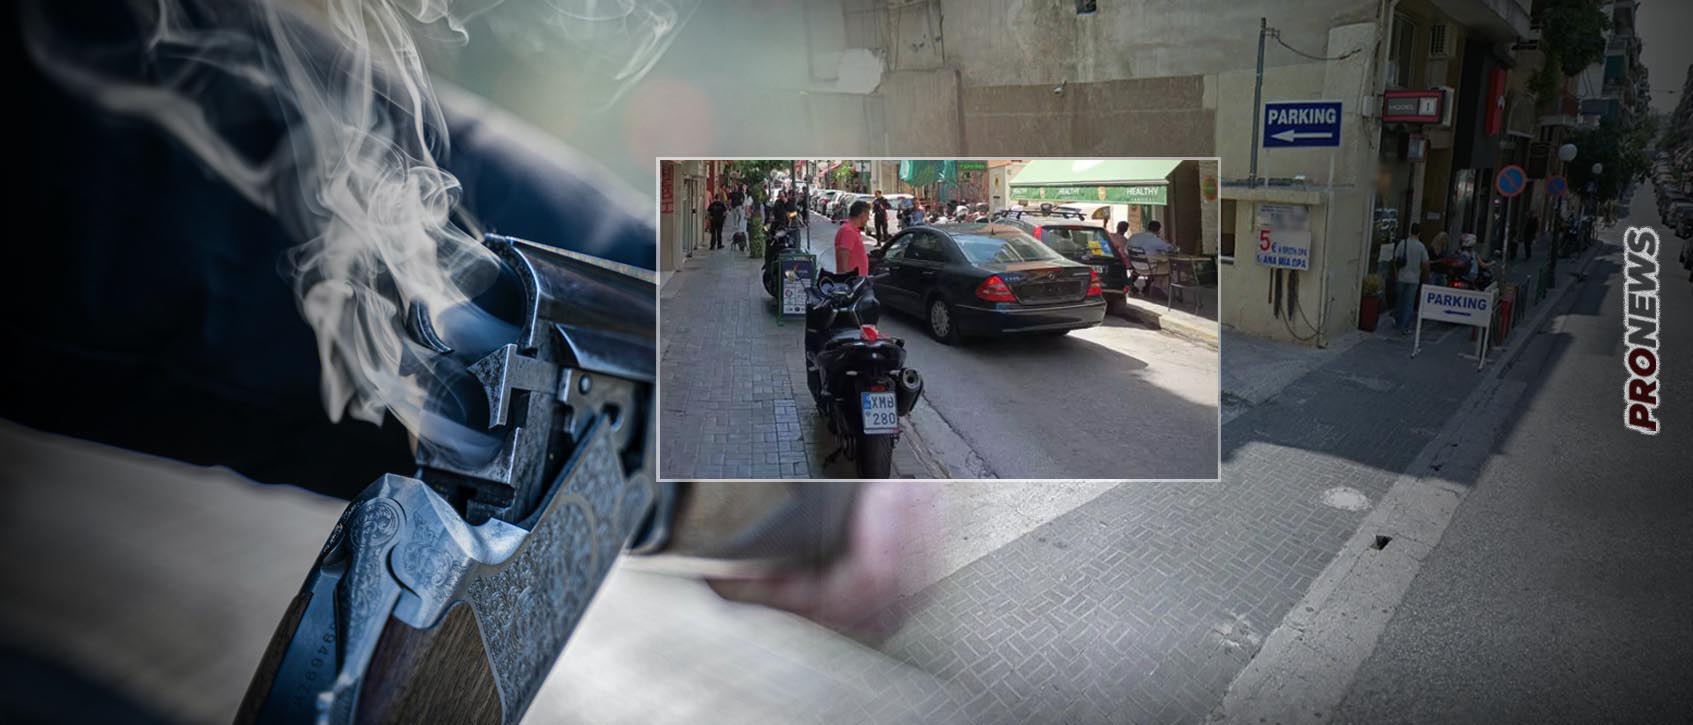 Εκτέλεση με καραμπίνα σε πάρκινγκ στον Πειραιά – Η χώρα έχει μεταβληθεί σε «Τέξας»